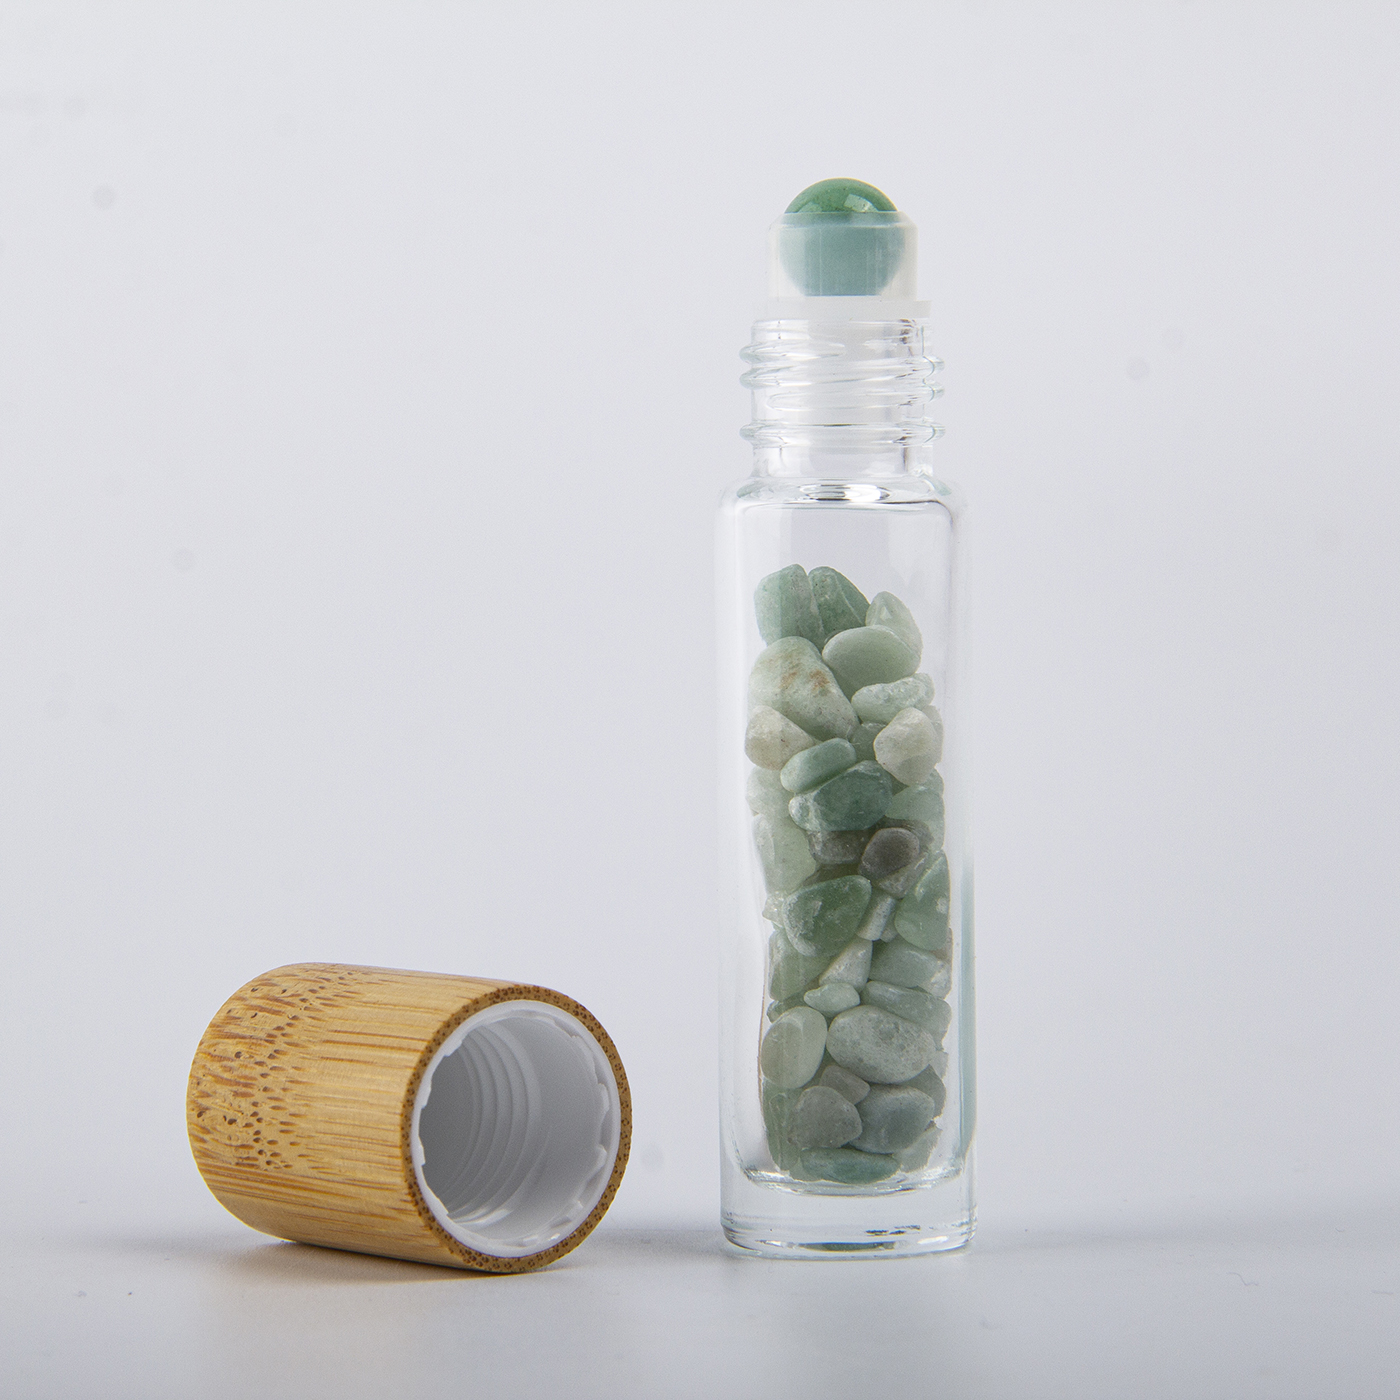 10ml Natural Gemstone Roller Ball Bottle3